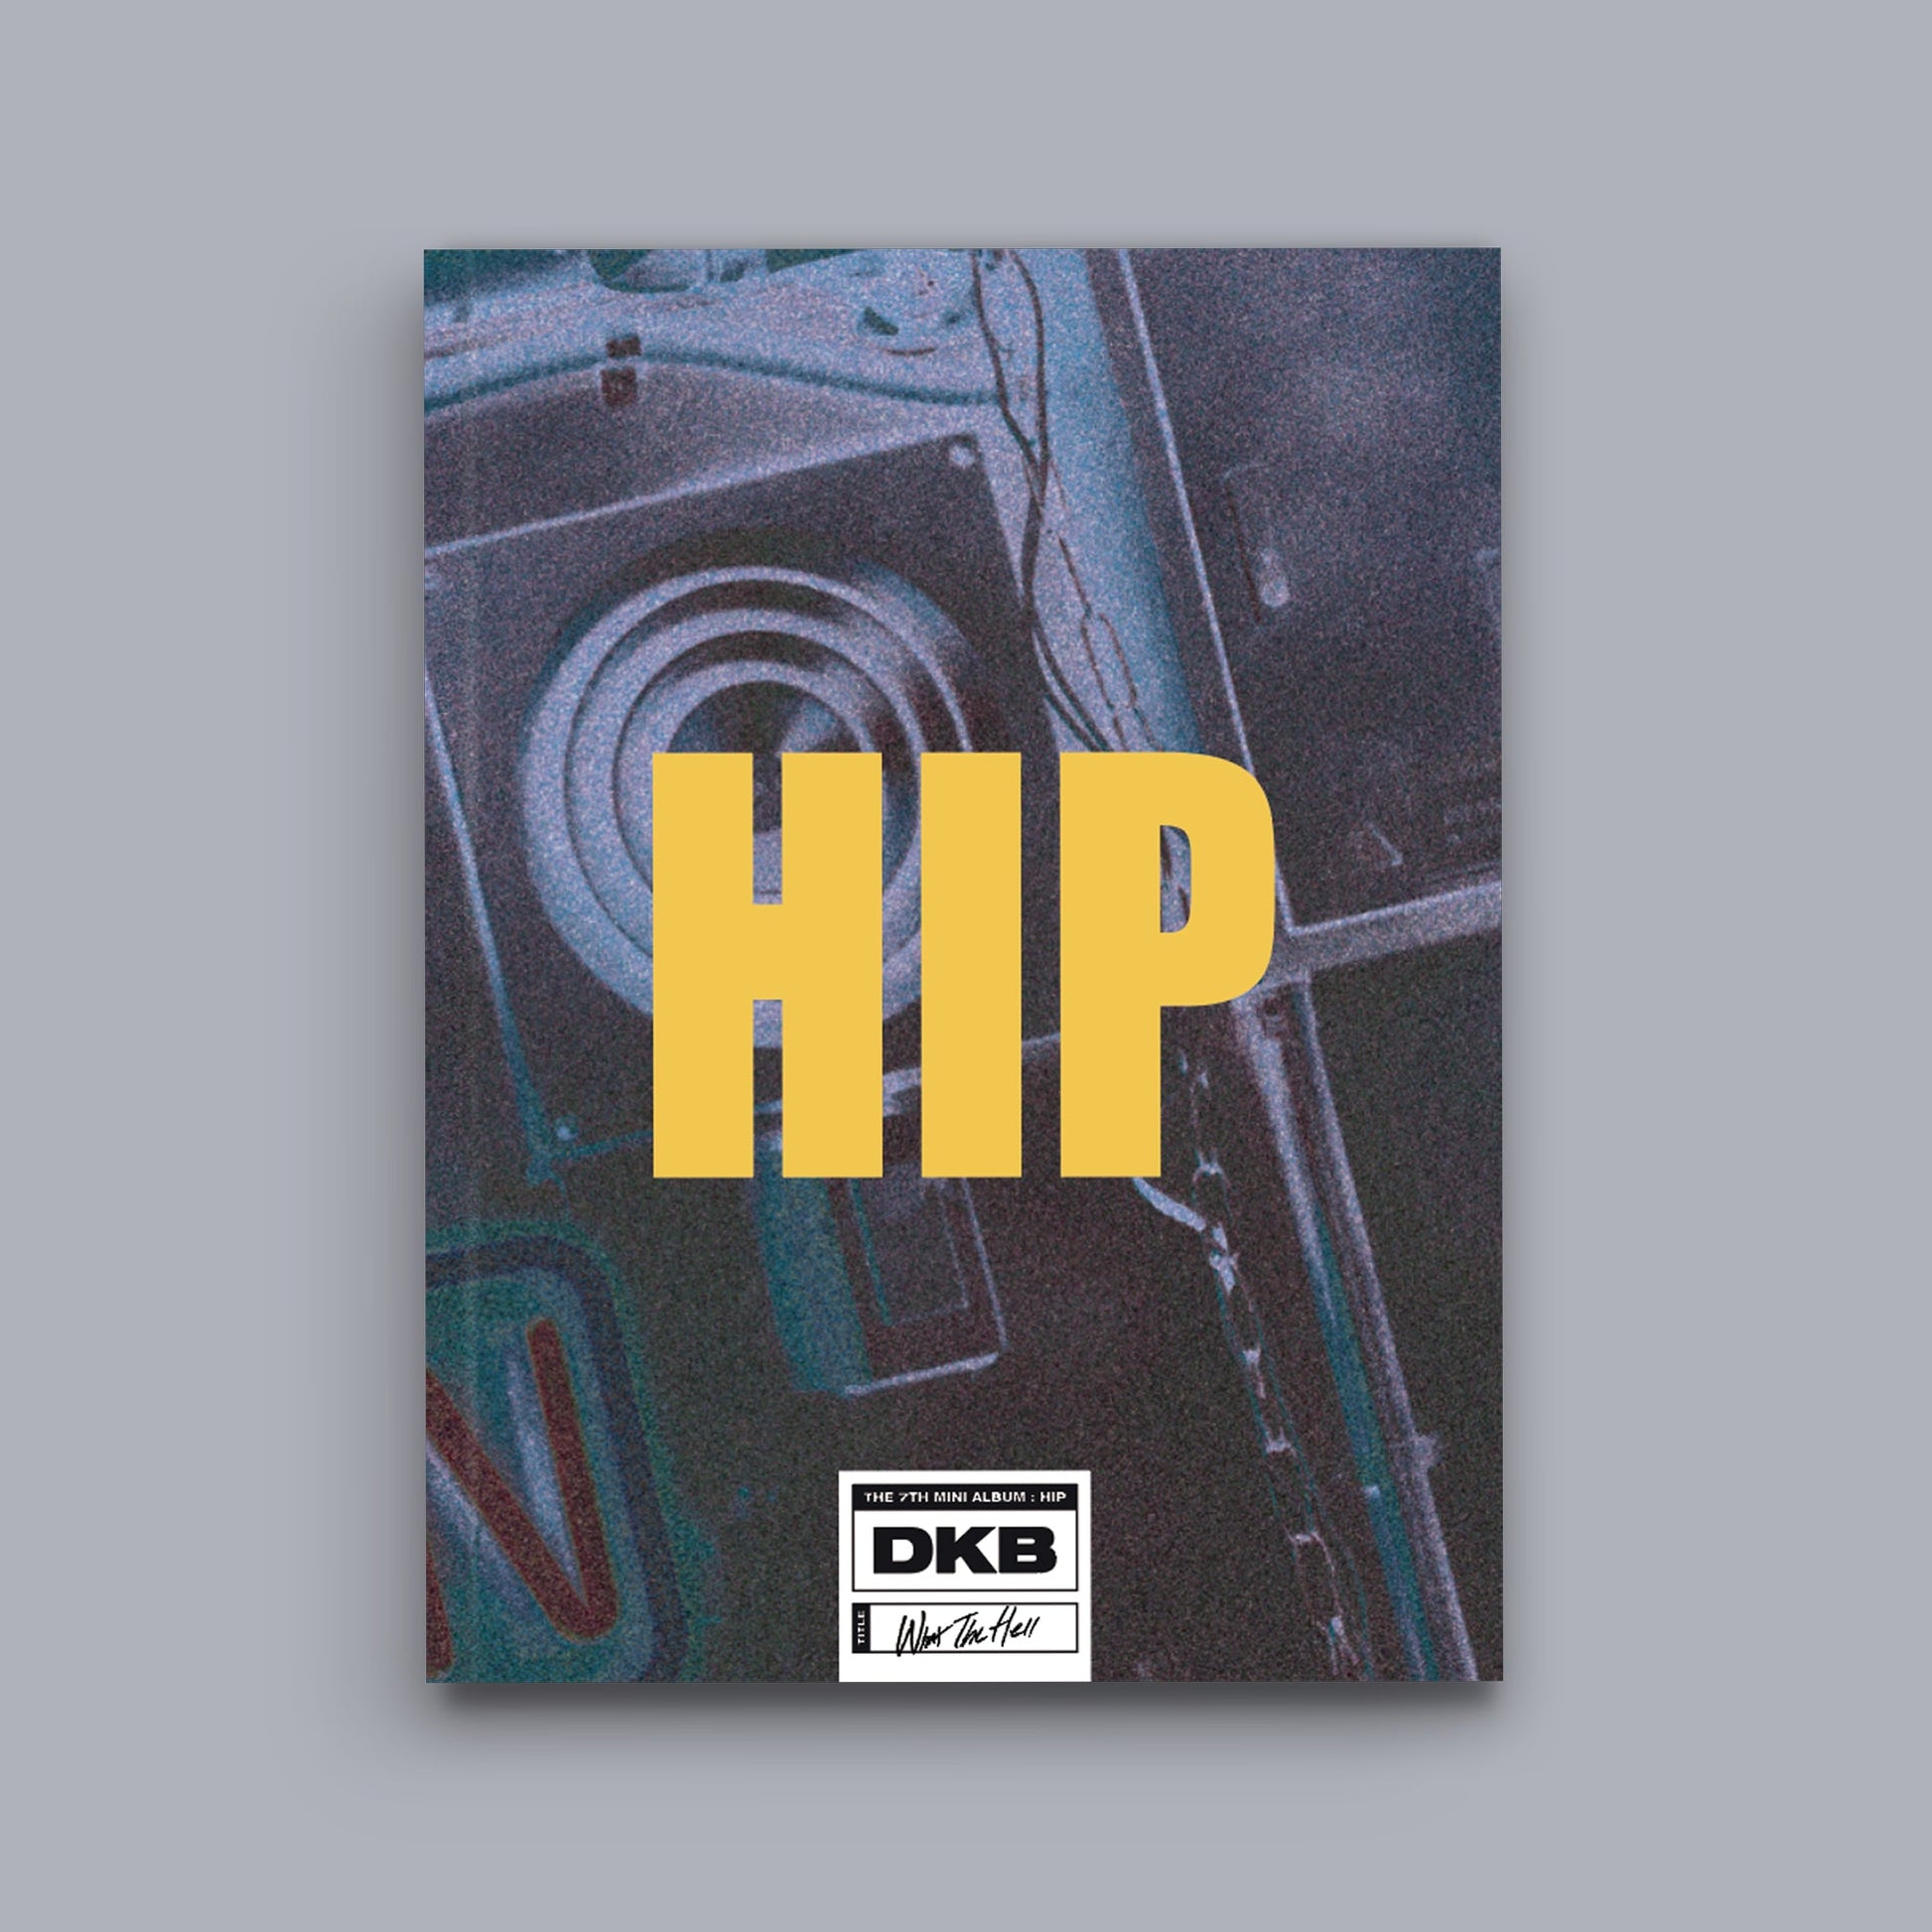 DKB 7TH MINI ALBUM 'HIP' HIGH VERSION COVER